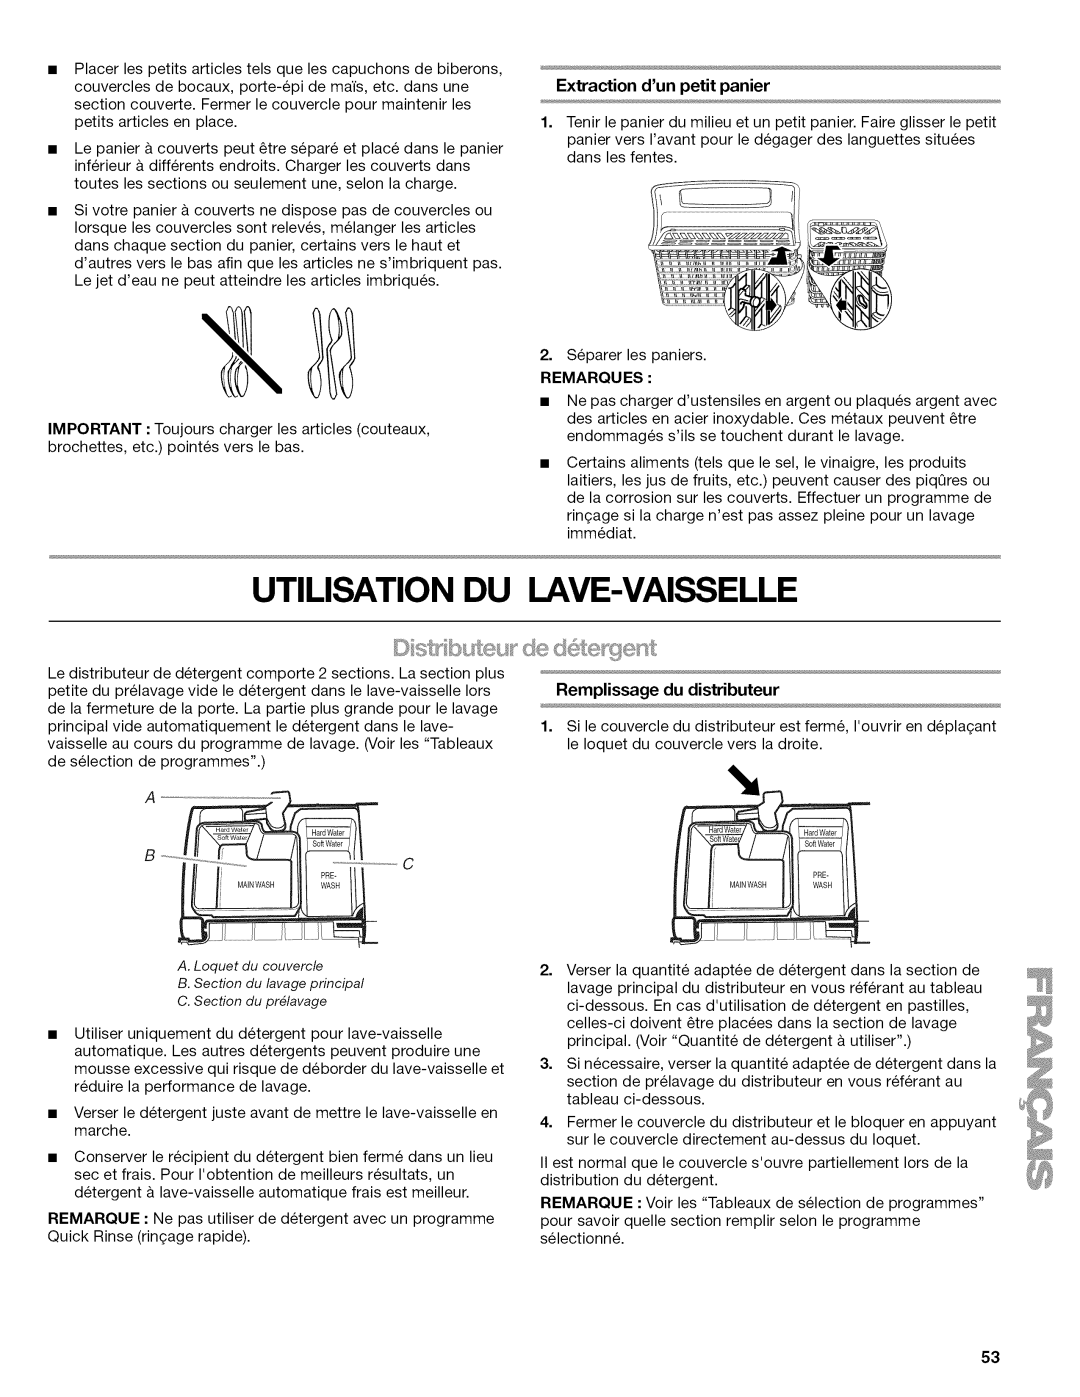 Kenmore 665.1622 manual Utilisation Du Lave-Vaisselle, Extraction dunpetit panier, Remarques 